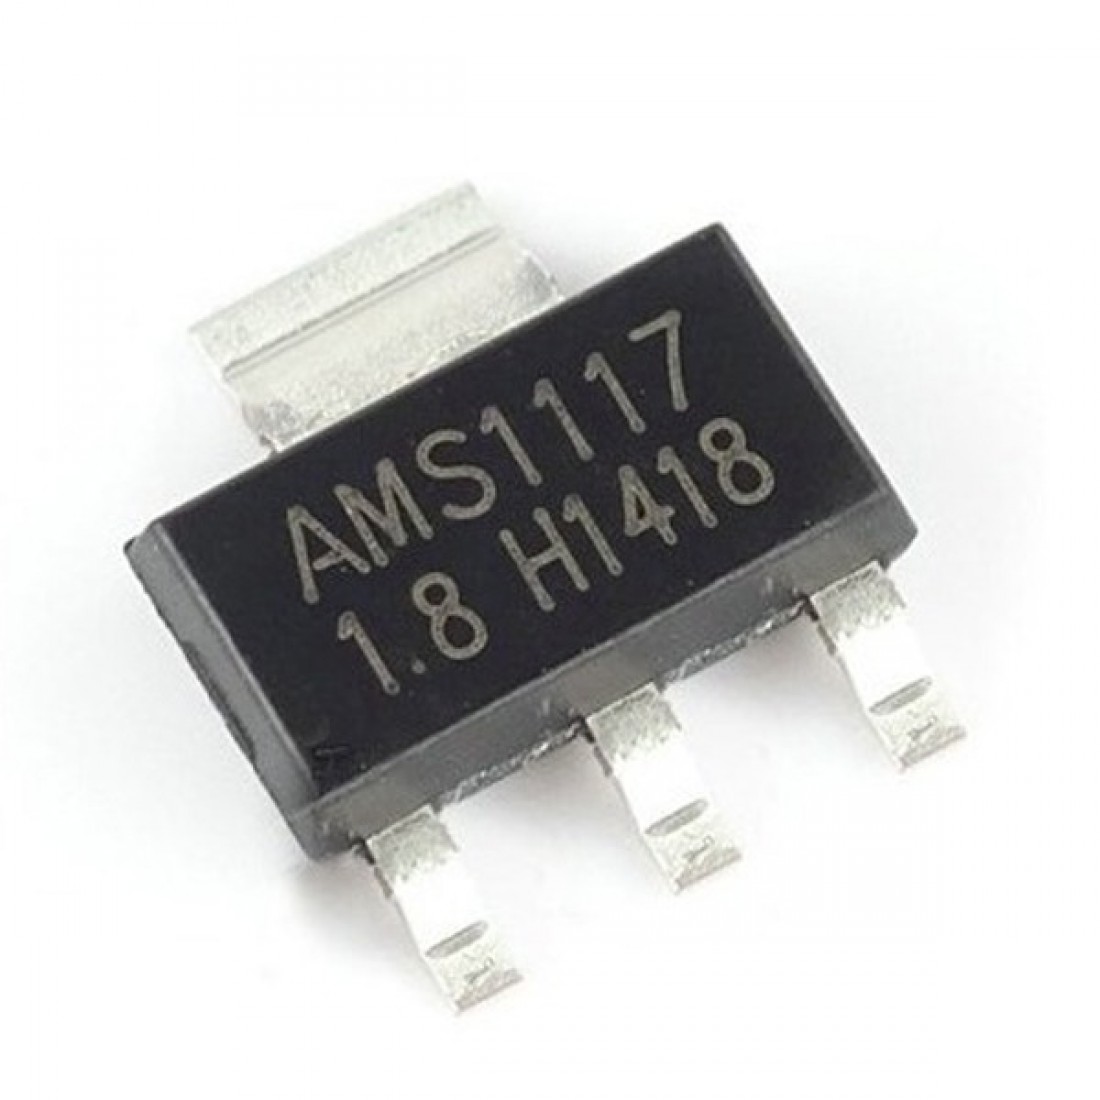 Стабилизатор 1117 3.3. Ams1117 1.2 даташит. 1117 Стабилизатор. Ams1117 Datasheet. Lm1117mp-5.0.